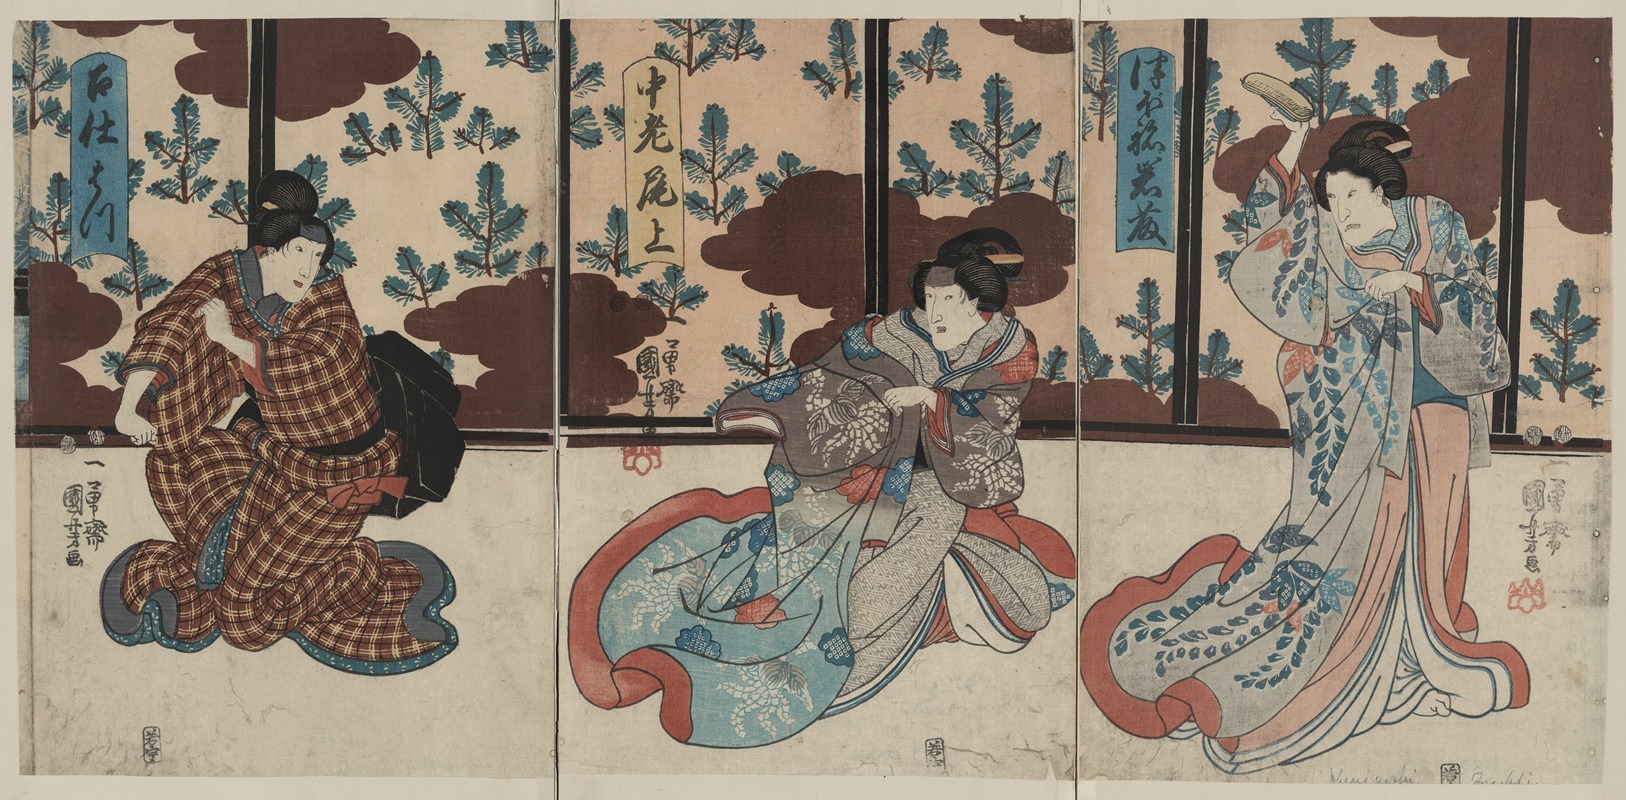 Utagawa Kuniyoshi - Tsubone iwafuji chūrō onoe meshitukai hatsu